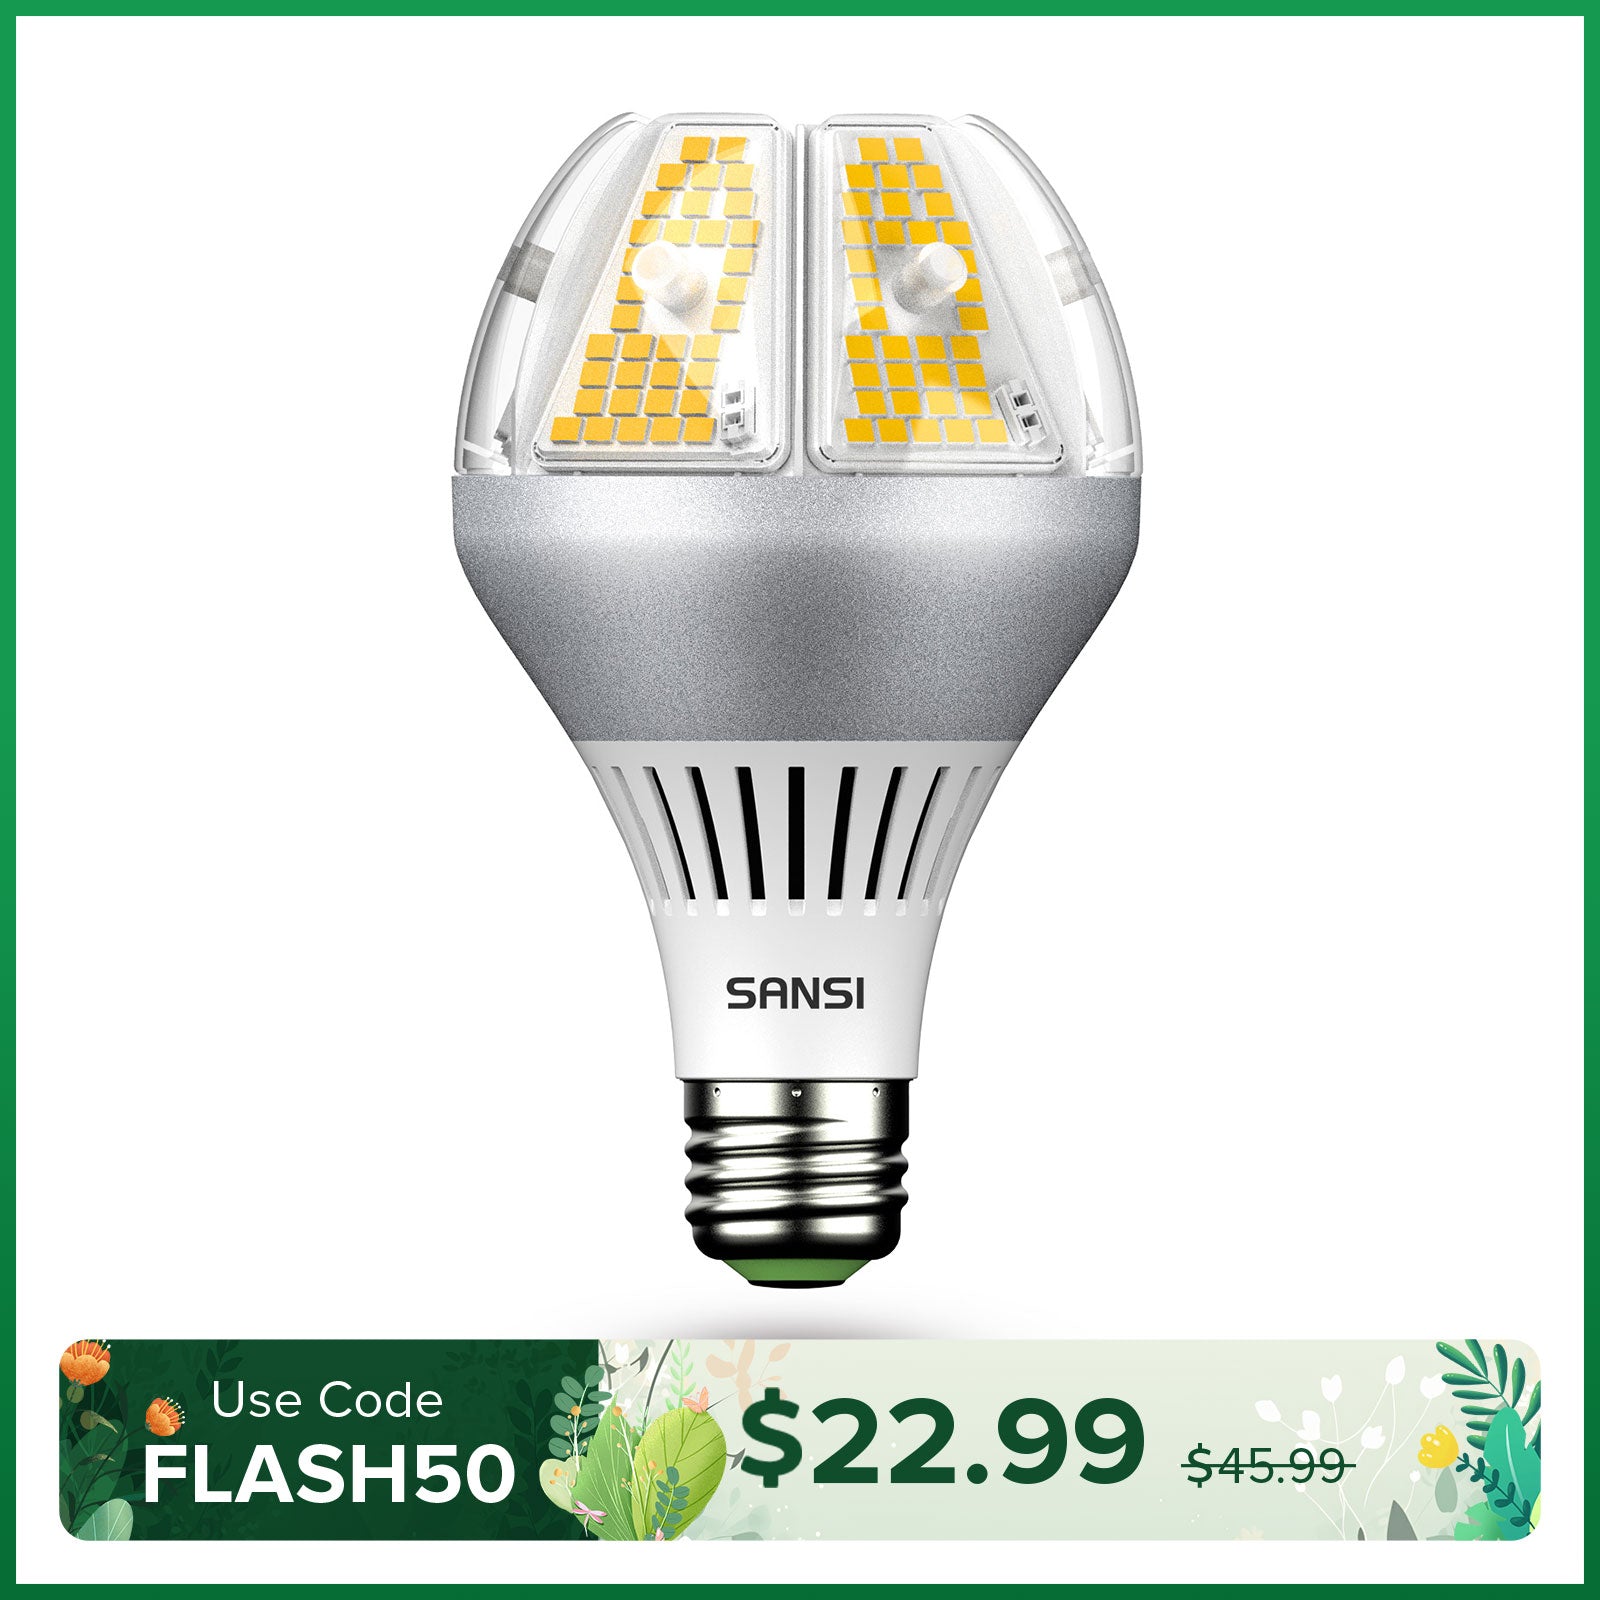 SANSI 120W LED High Bay Shop Light(US ONLY)